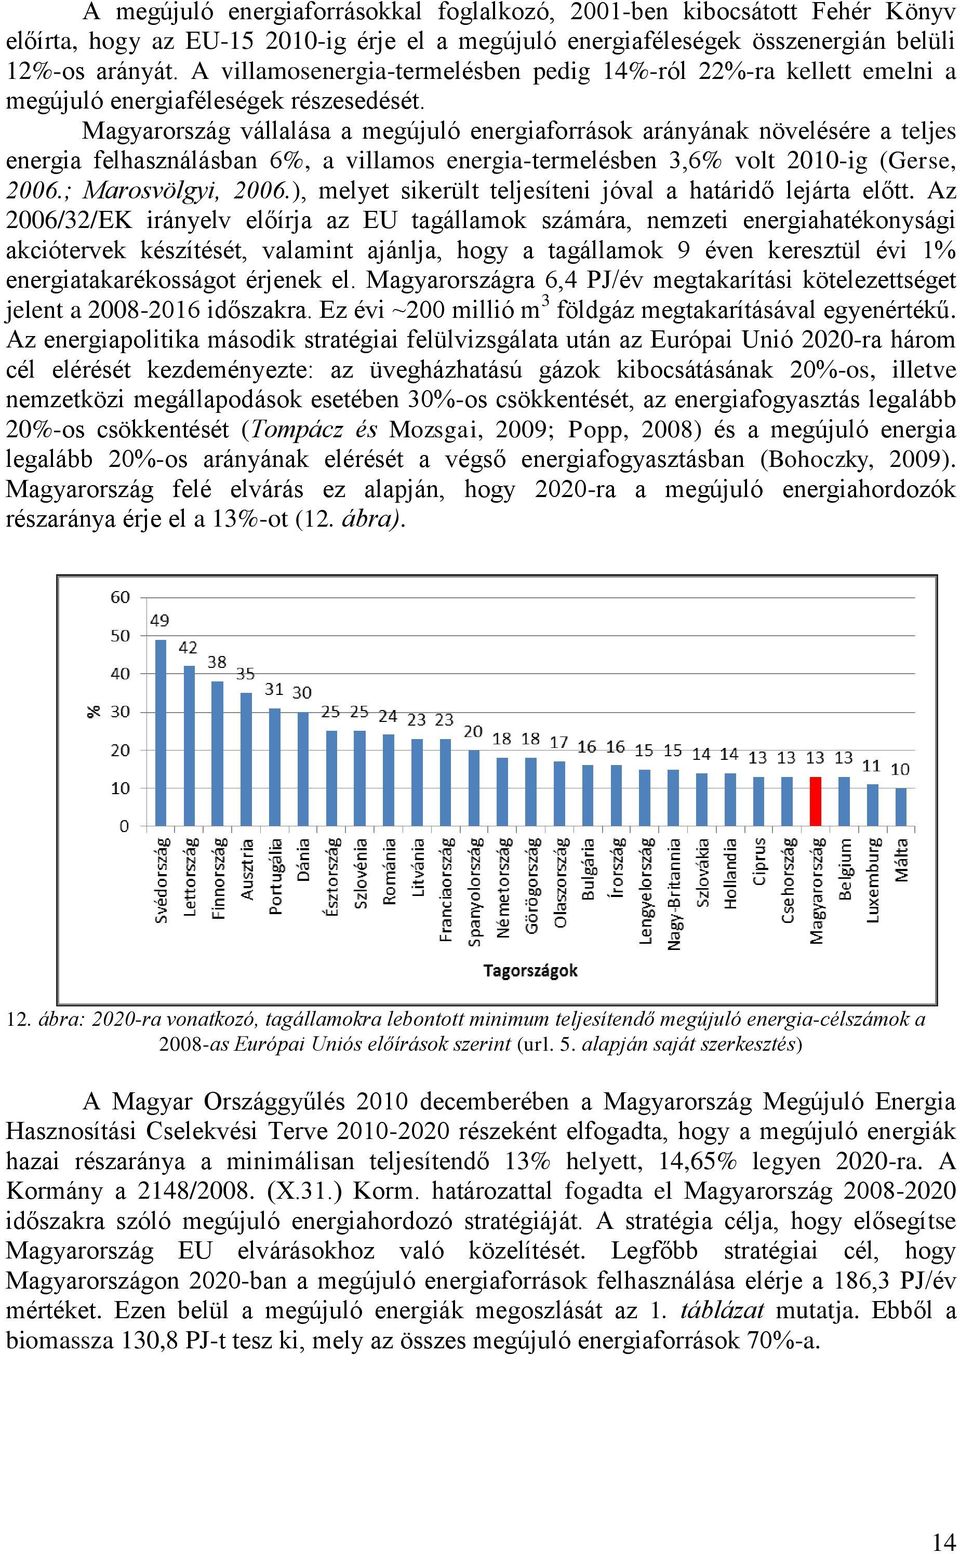 Magyarország vállalása a megújuló energiaforrások arányának növelésére a teljes energia felhasználásban 6%, a villamos energia-termelésben 3,6% volt 2010-ig (Gerse, 2006.; Marosvölgyi, 2006.